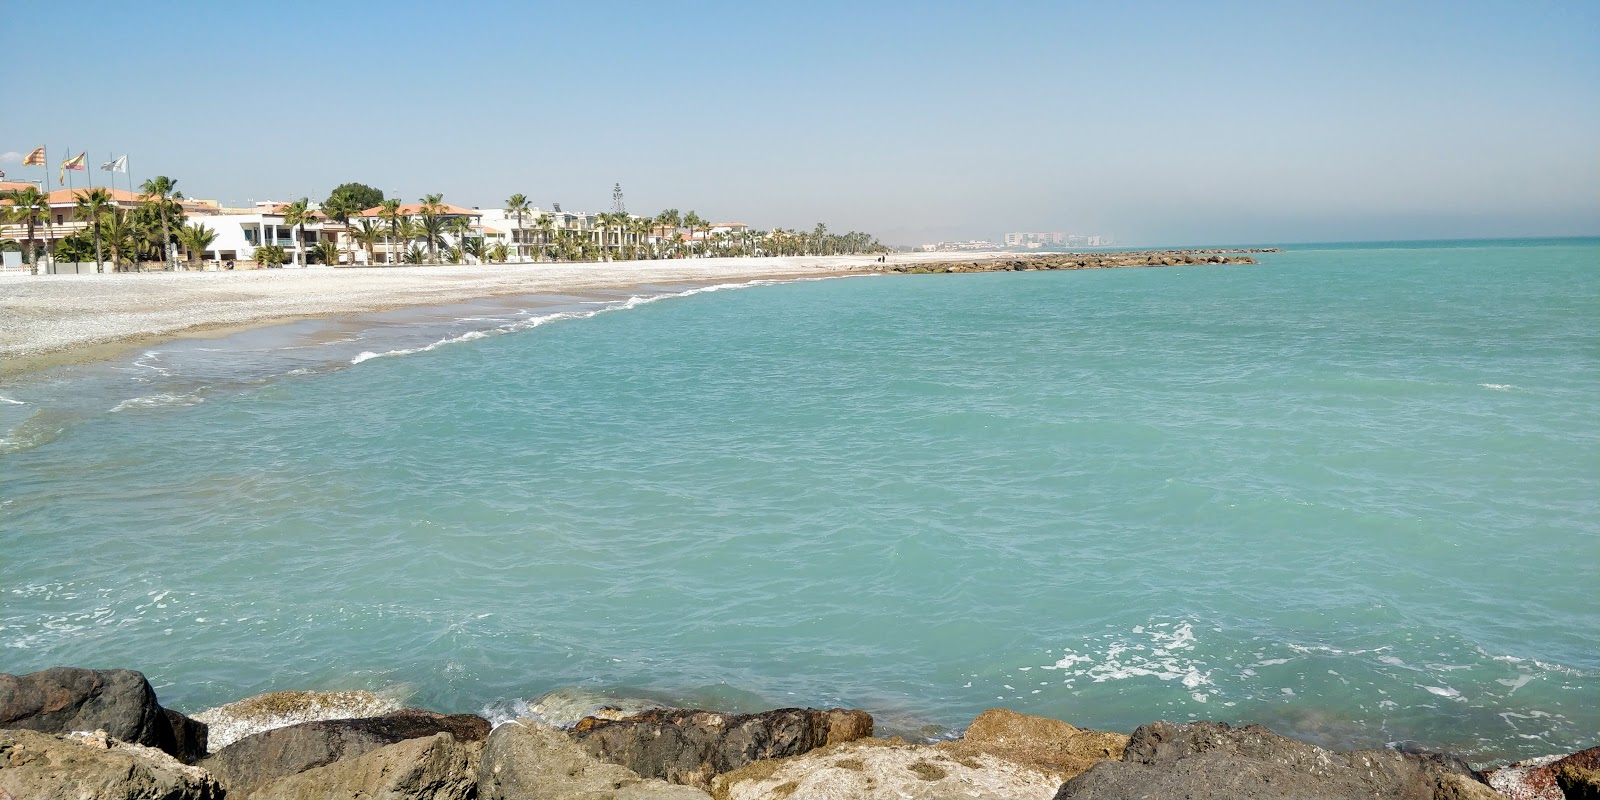 Moncofar Plajı'in fotoğrafı gri ince çakıl taş yüzey ile